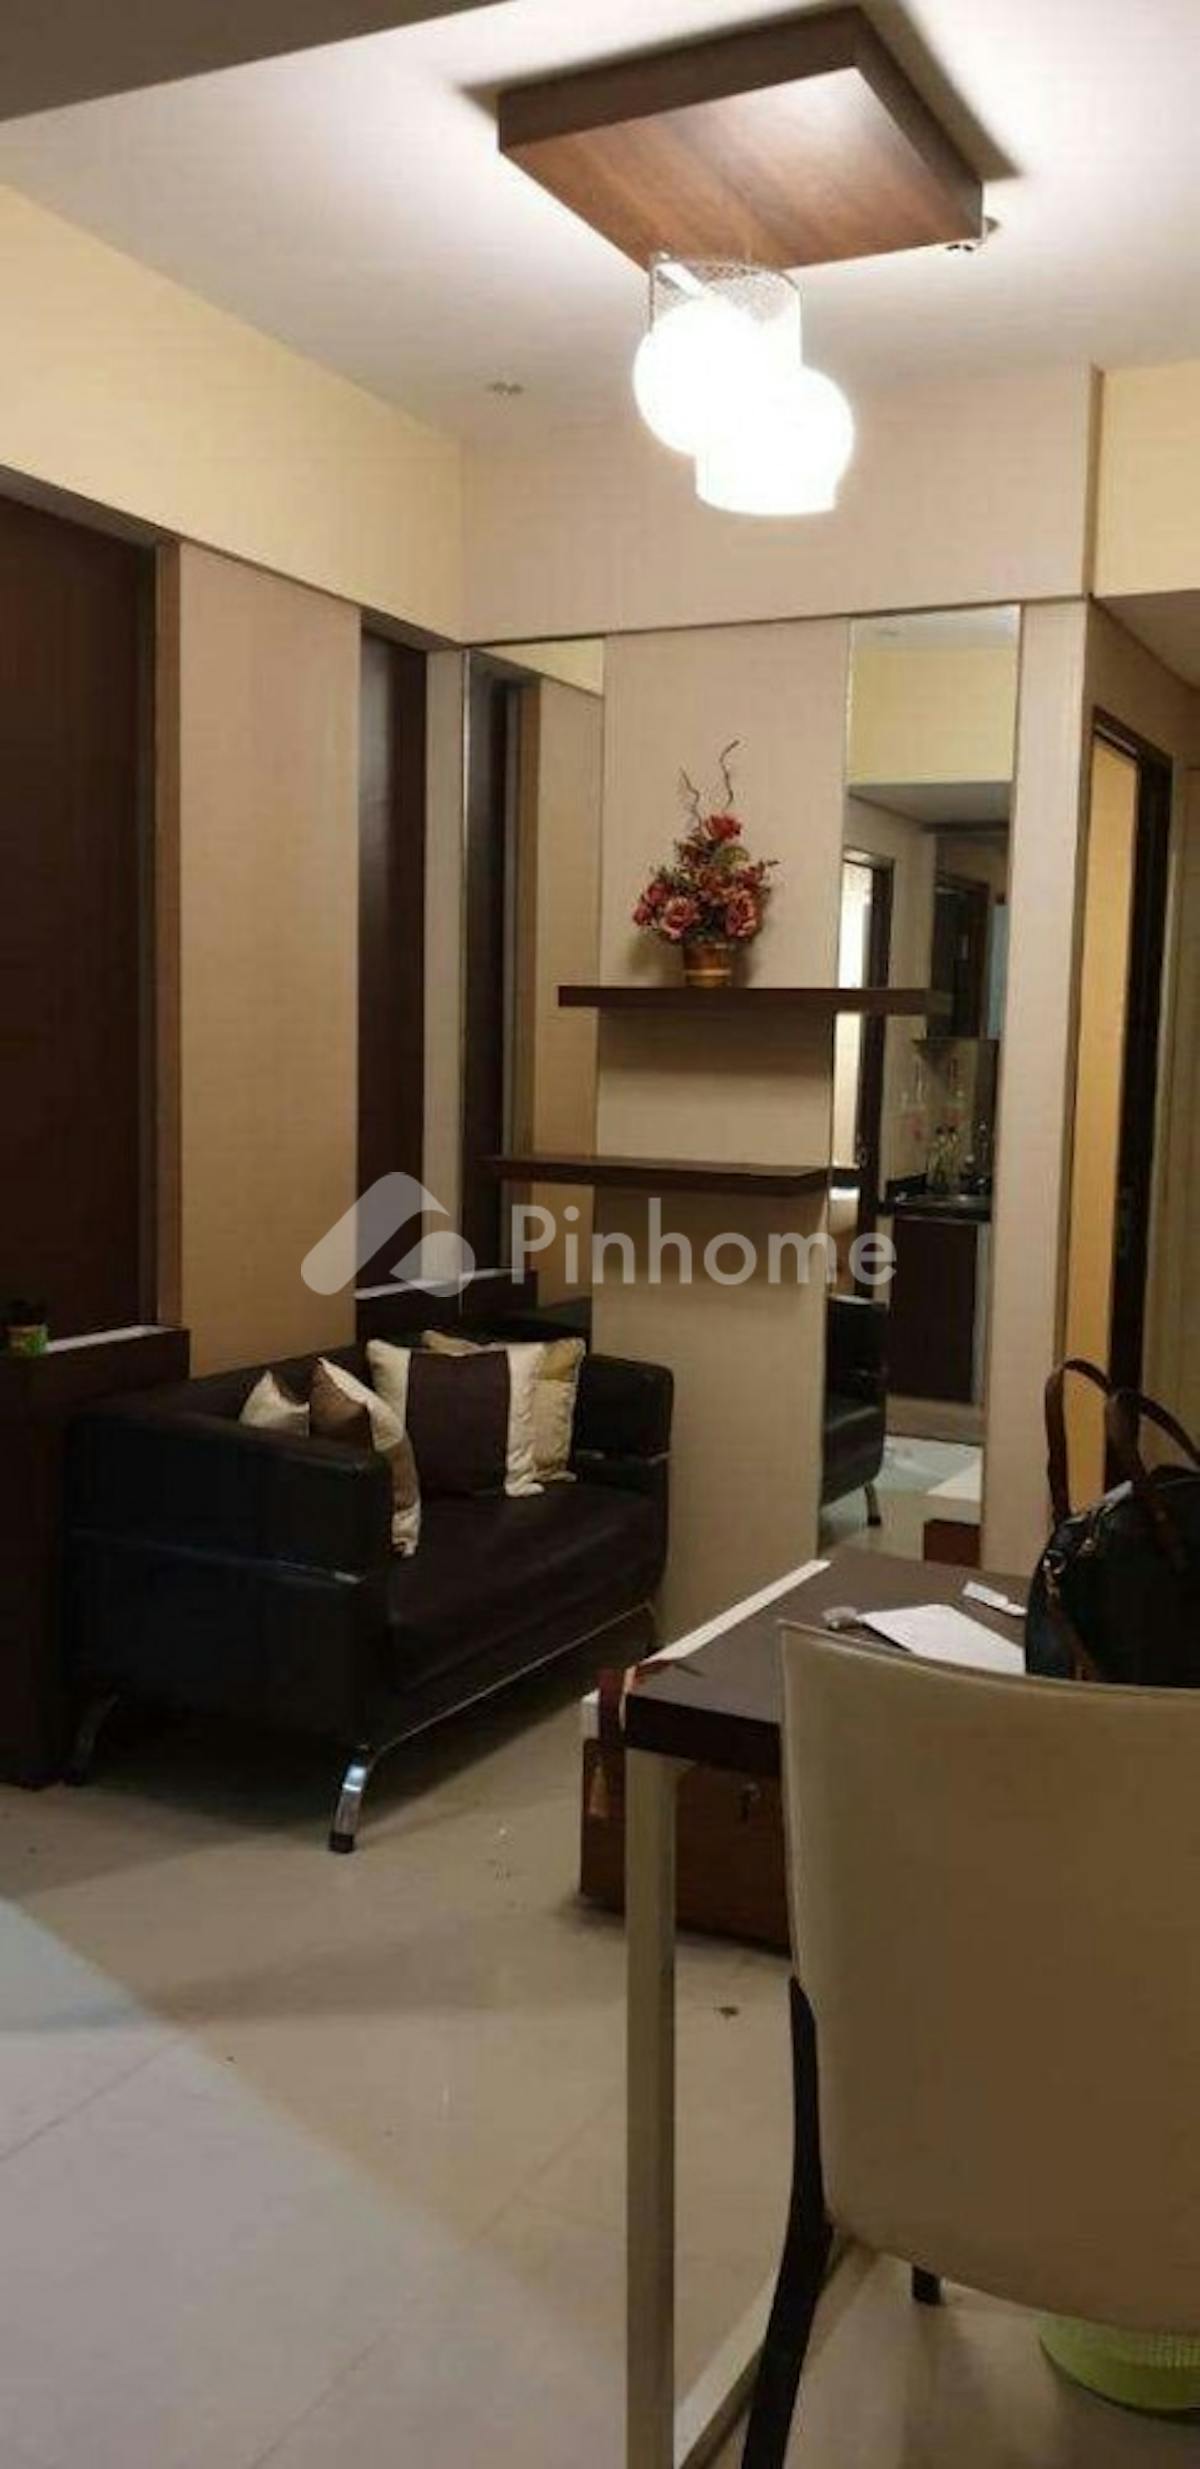 Dijual Apartemen 2BR Siap Pakai Dekat UIN di Papilio, Jl. Ahmad Yani - Gambar 1